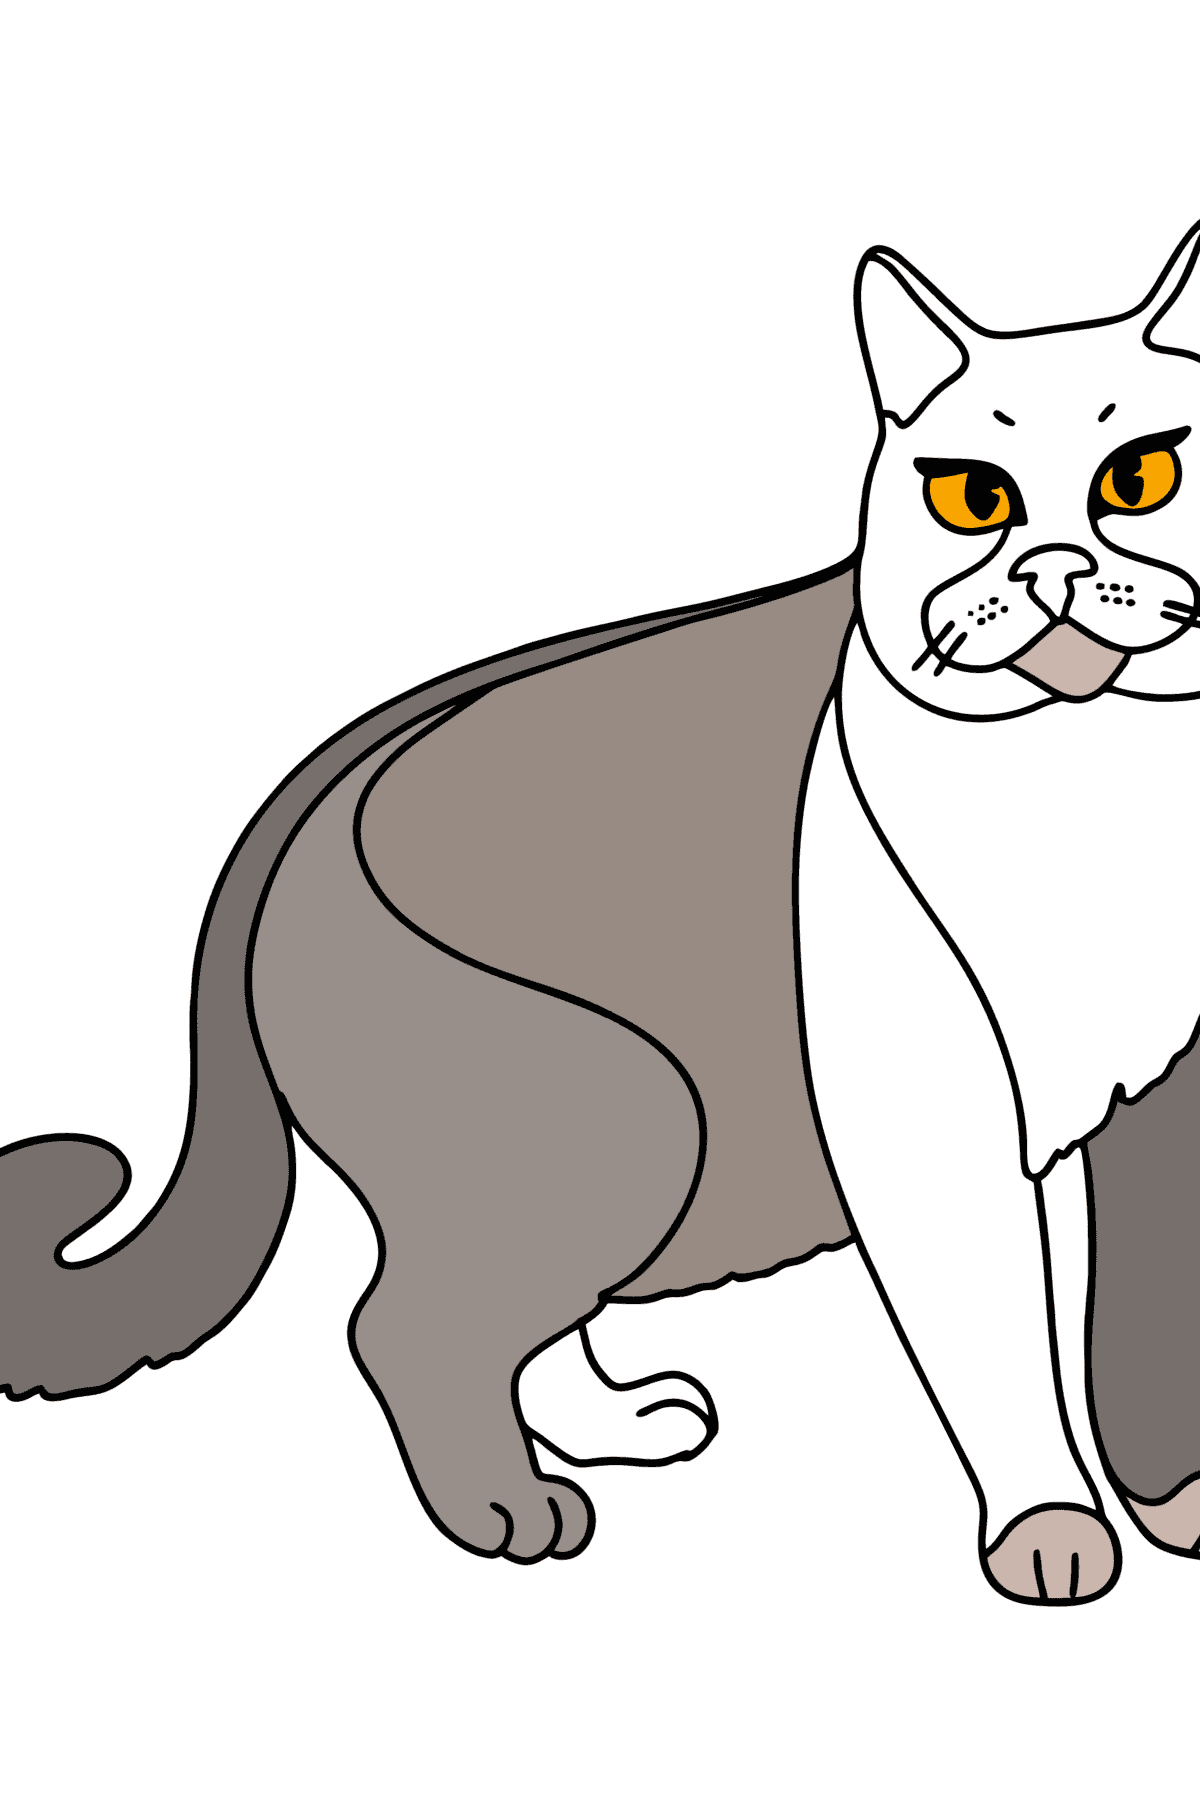 Boyama sayfası chartreuse kedi - Boyamalar çocuklar için